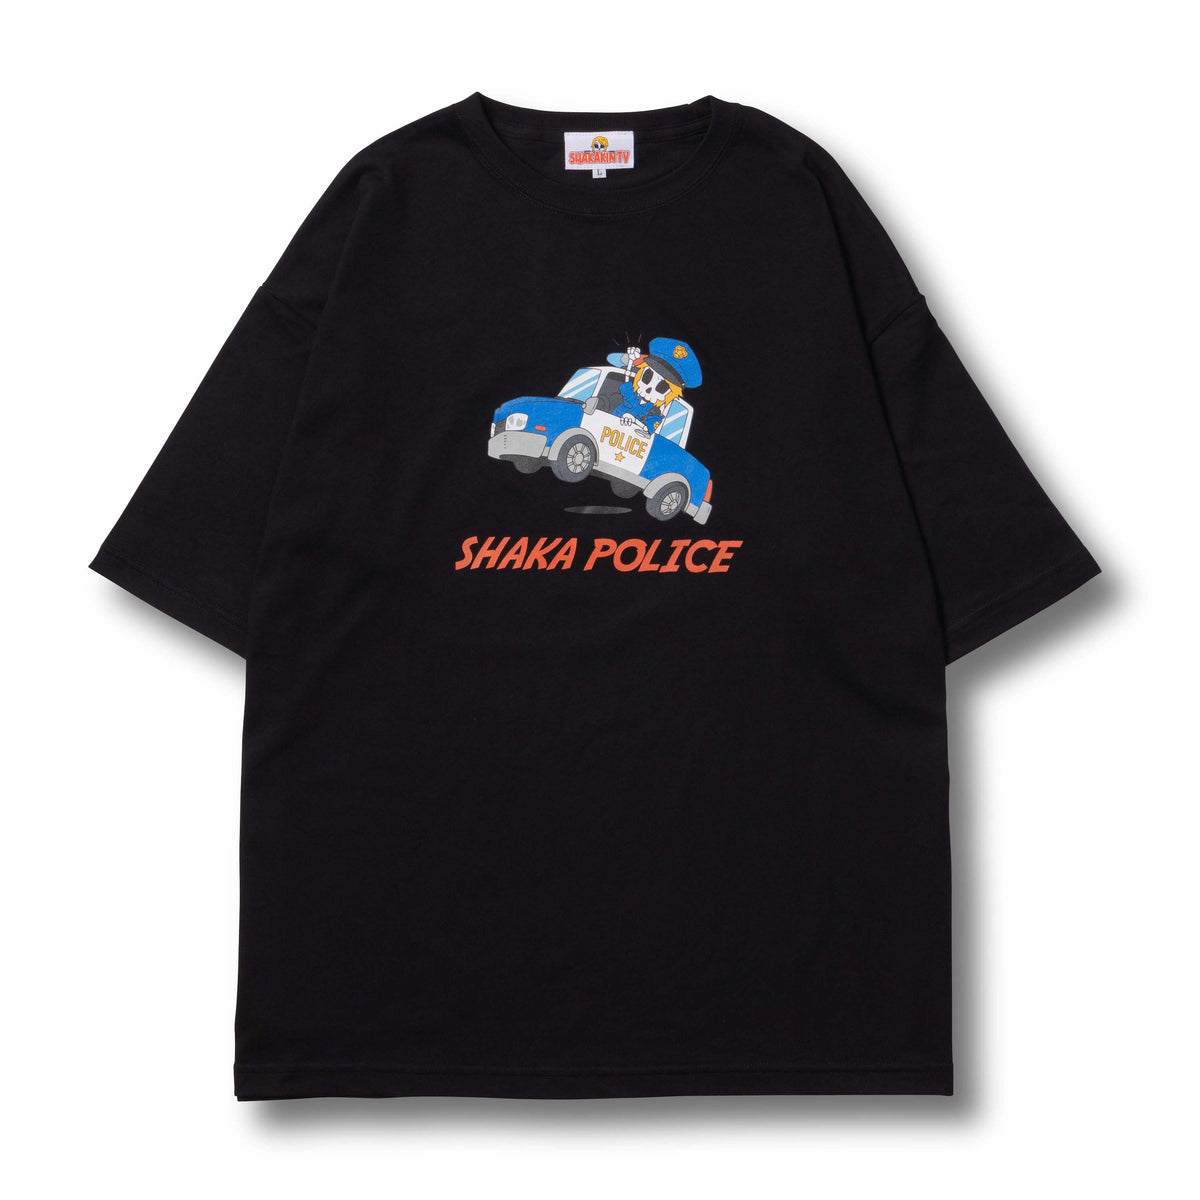 ぽぽ商品釈迦 ストリーマー SHAKA POLICE Tシャツ Lサイズ